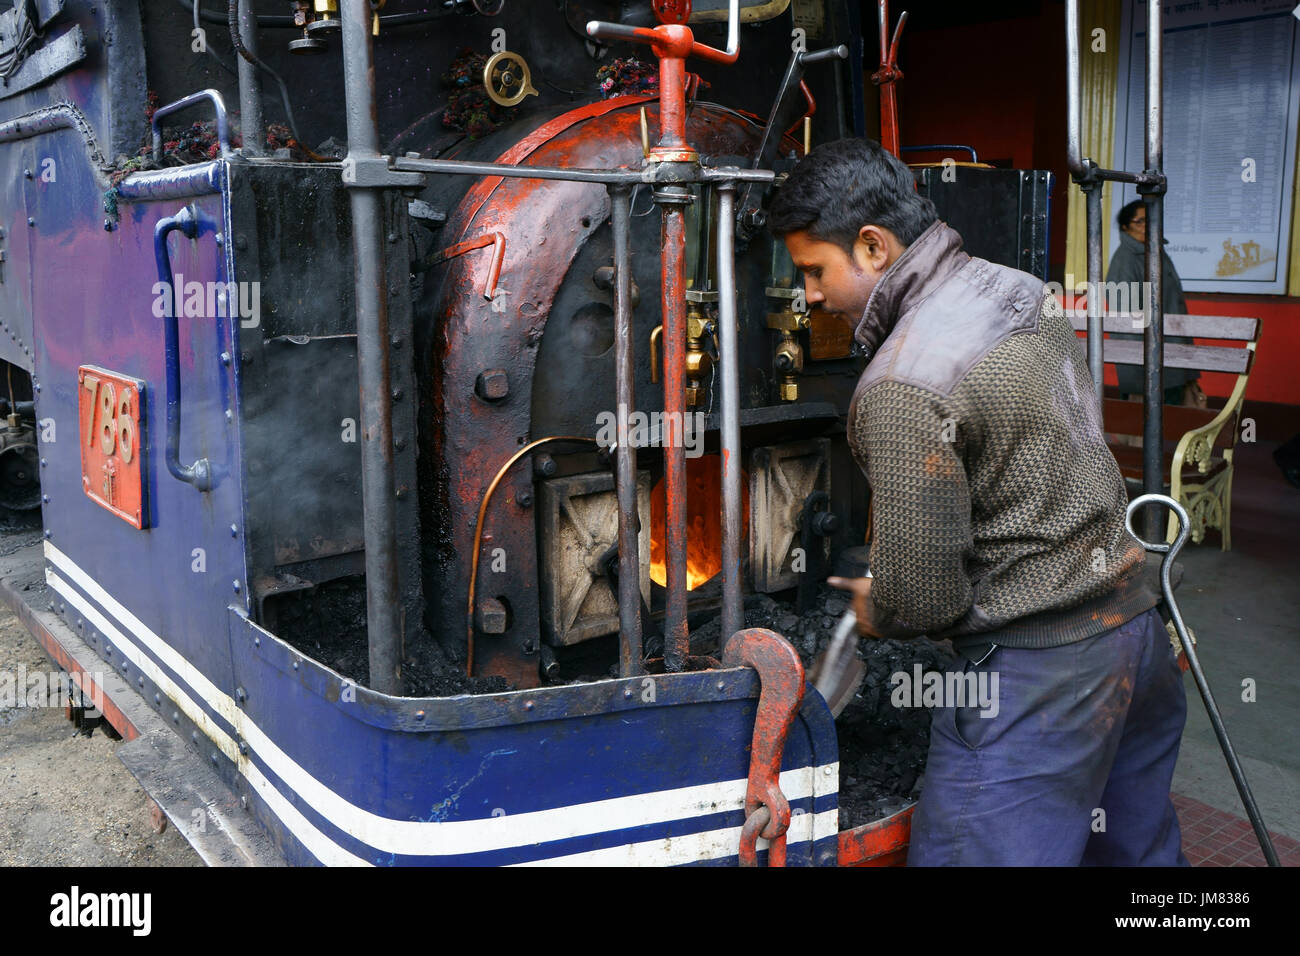 Hauptwagen Schaufeln Kohle in Brenner von Dampf-Lokomotive der Spielzeugeisenbahn, Darjeeling, Westbengalen, Indien Stockfoto